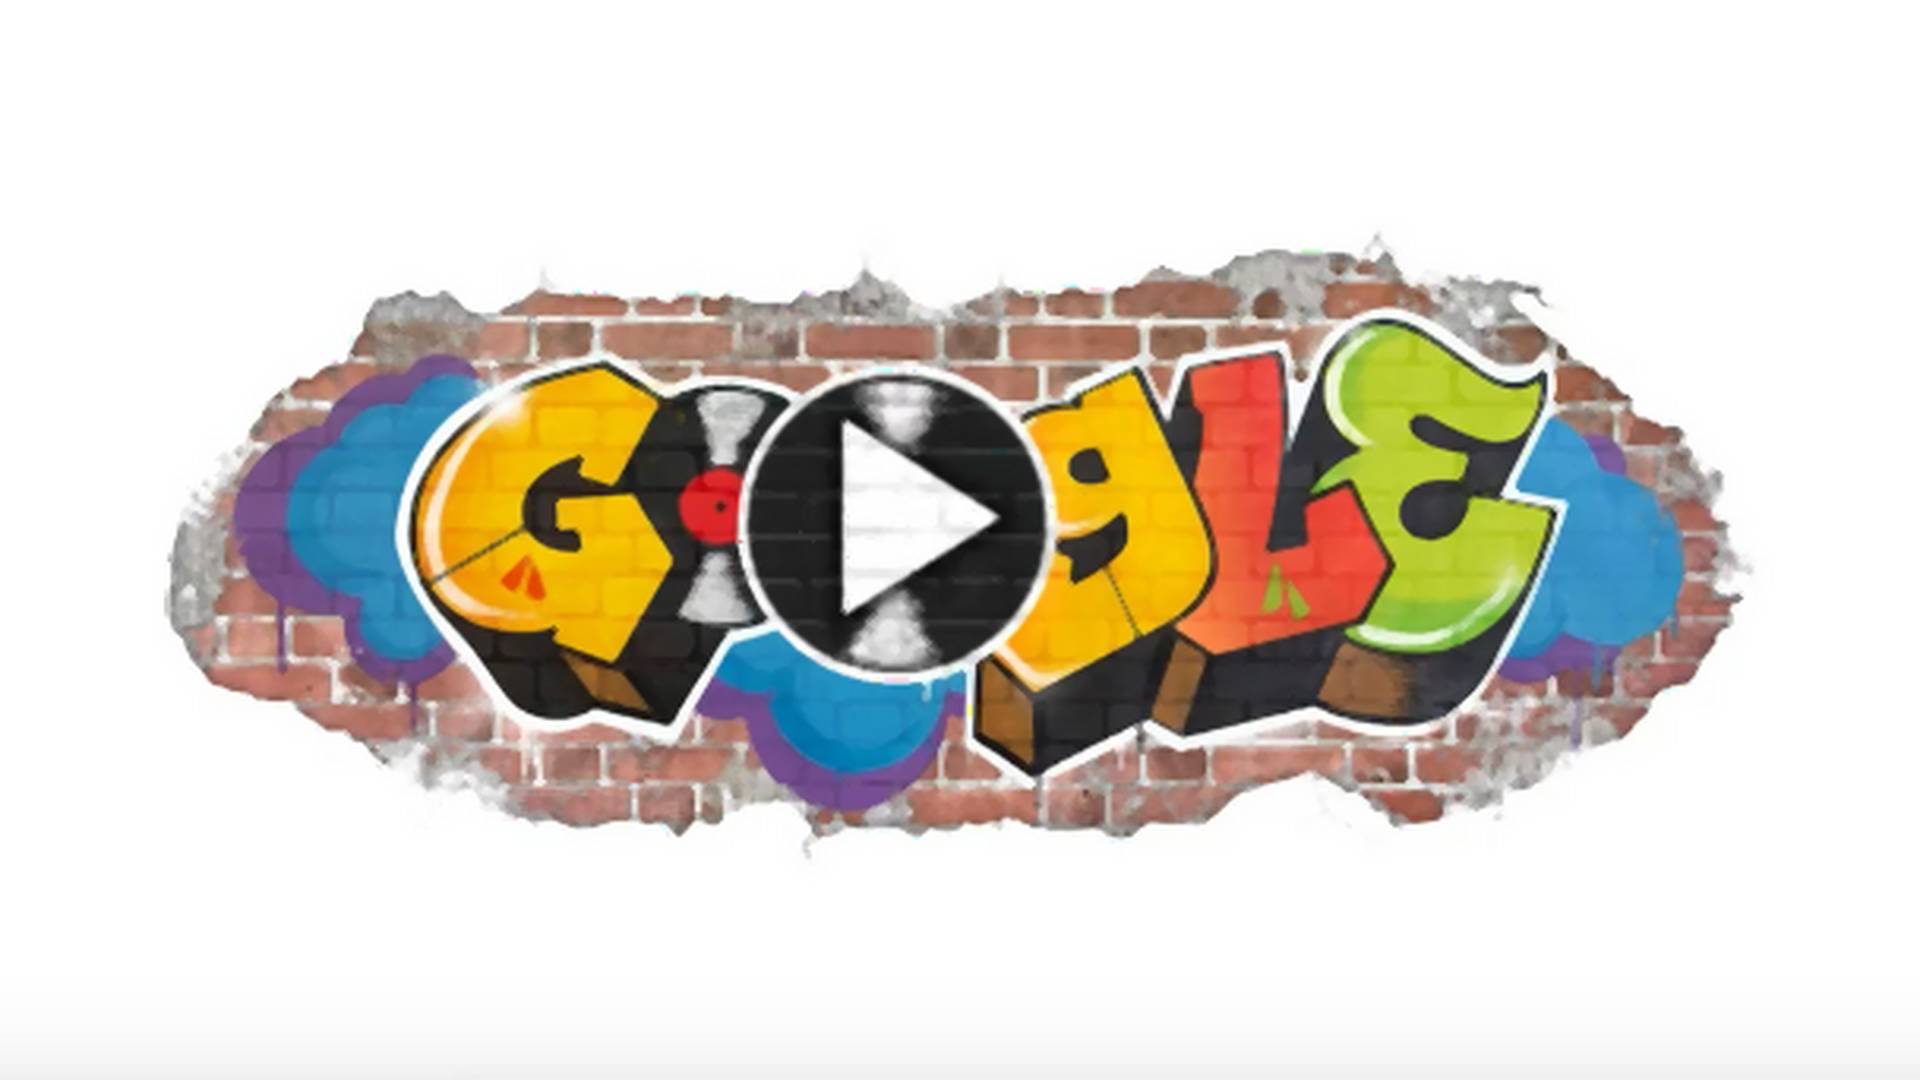 44 urodziny rapu. DIY, Google Doodle daje ci do ręki mikser i wybór kultowych sampli